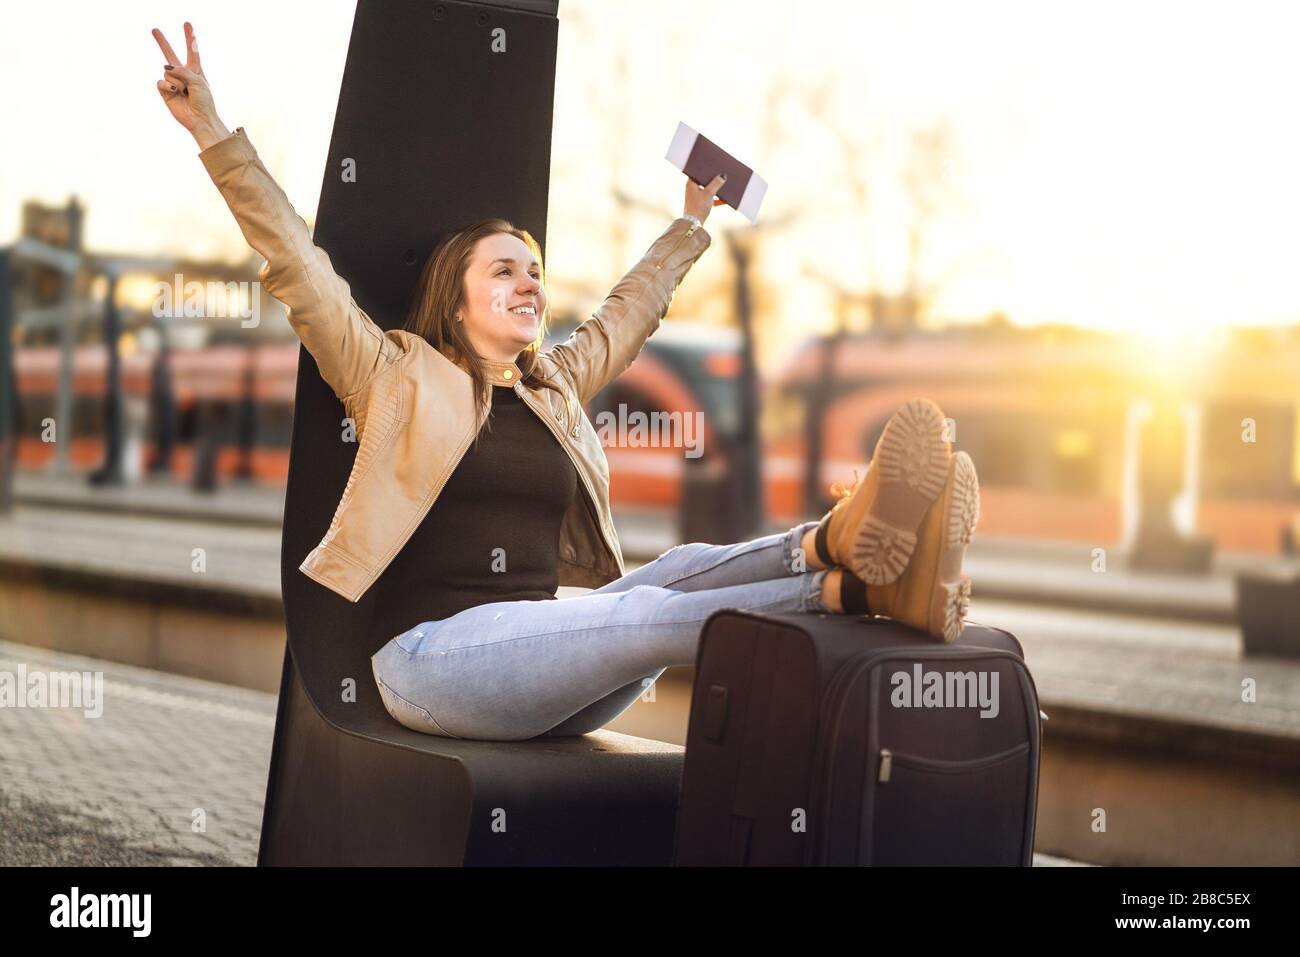 Endlich im Urlaub. Frau feiert am Bahnhof, um auf lustige Reise zu gehen. Fröhlicher lächelnder Mensch mit Beinen und Schuhen auf Koffer und Gepäck. Stockfoto